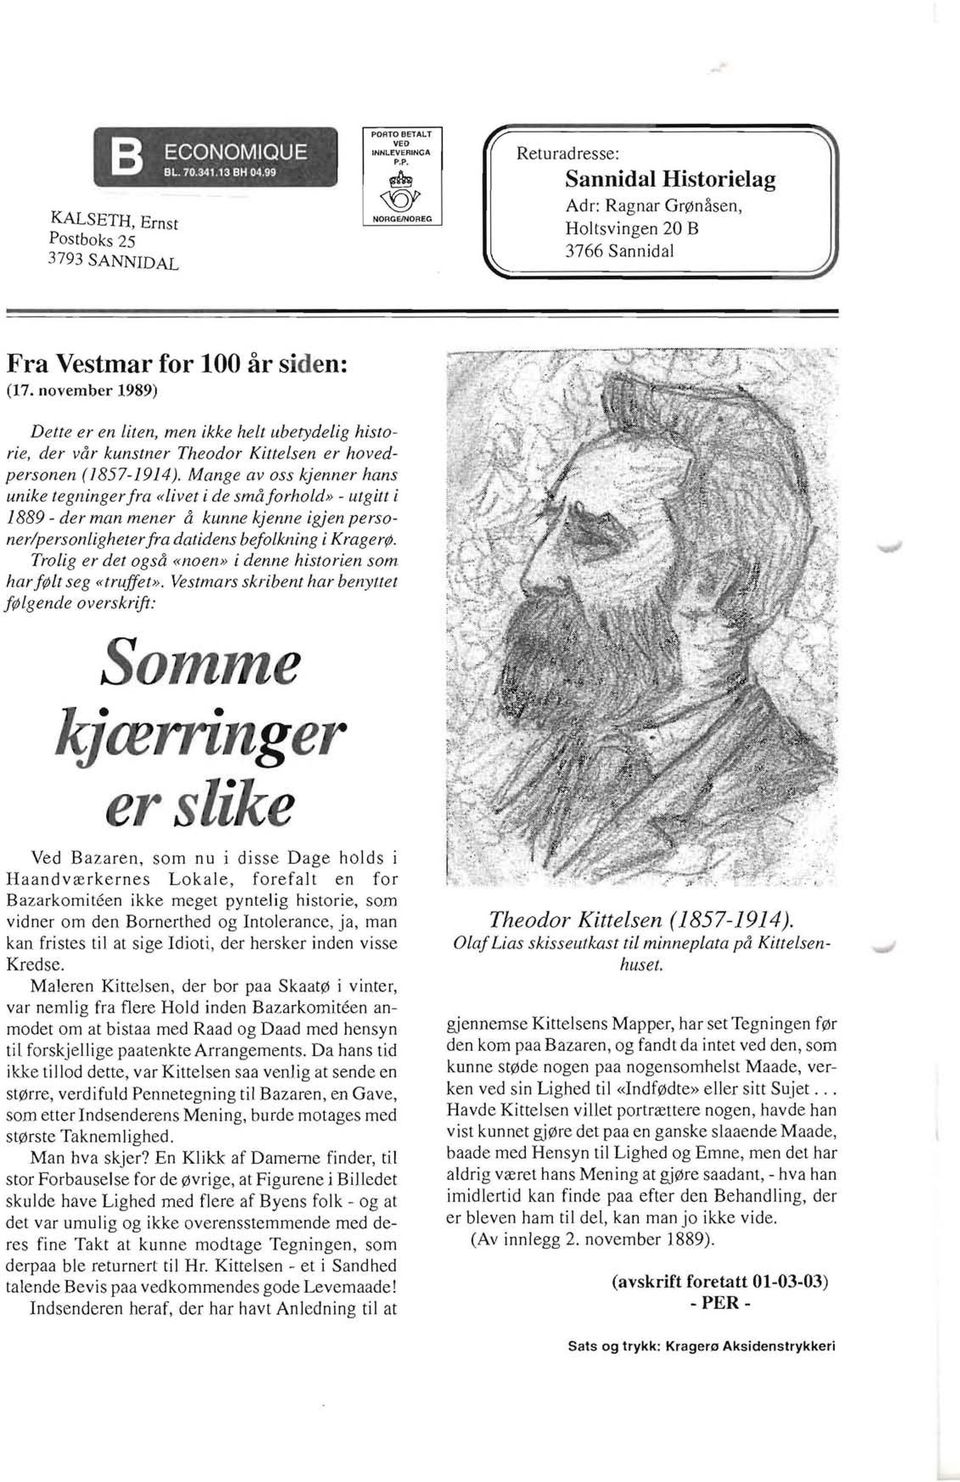 november 1989) Dette er en lit en, men ikke helt ubetydelig historie, der var kunstner Theodor Kittelsen er hovedpersonen (1857-1914).